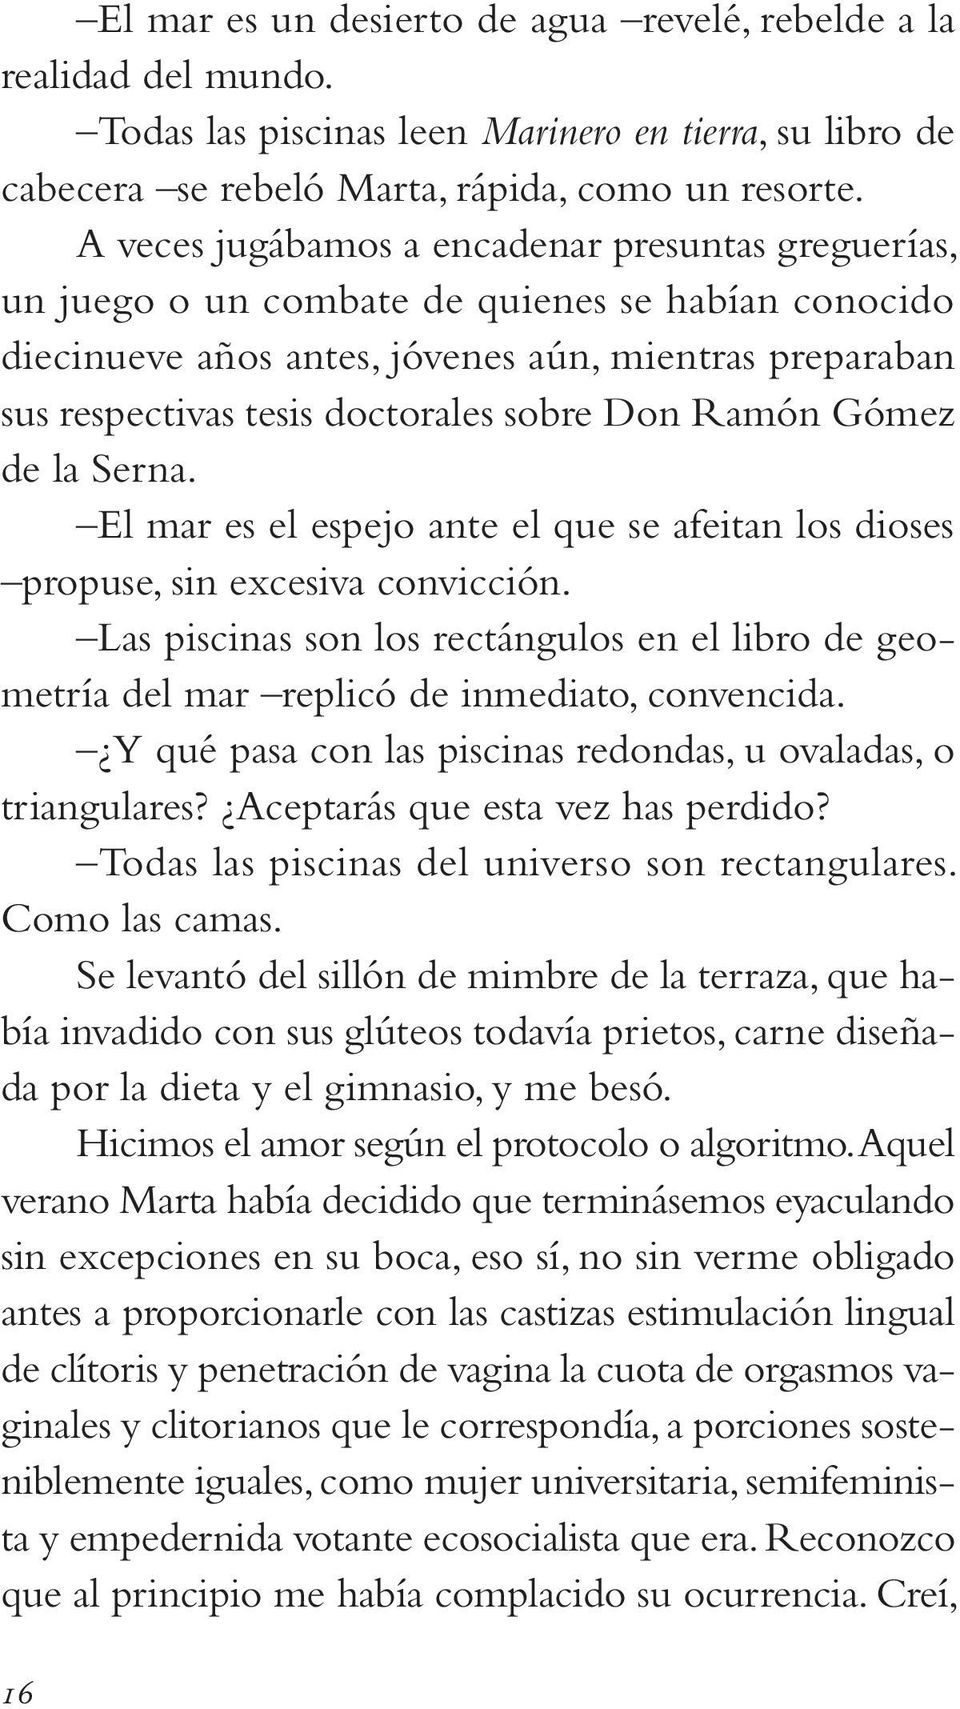 Don Ramón Gómez de la Serna. El mar es el espejo ante el que se afeitan los dioses propuse, sin excesiva convicción.